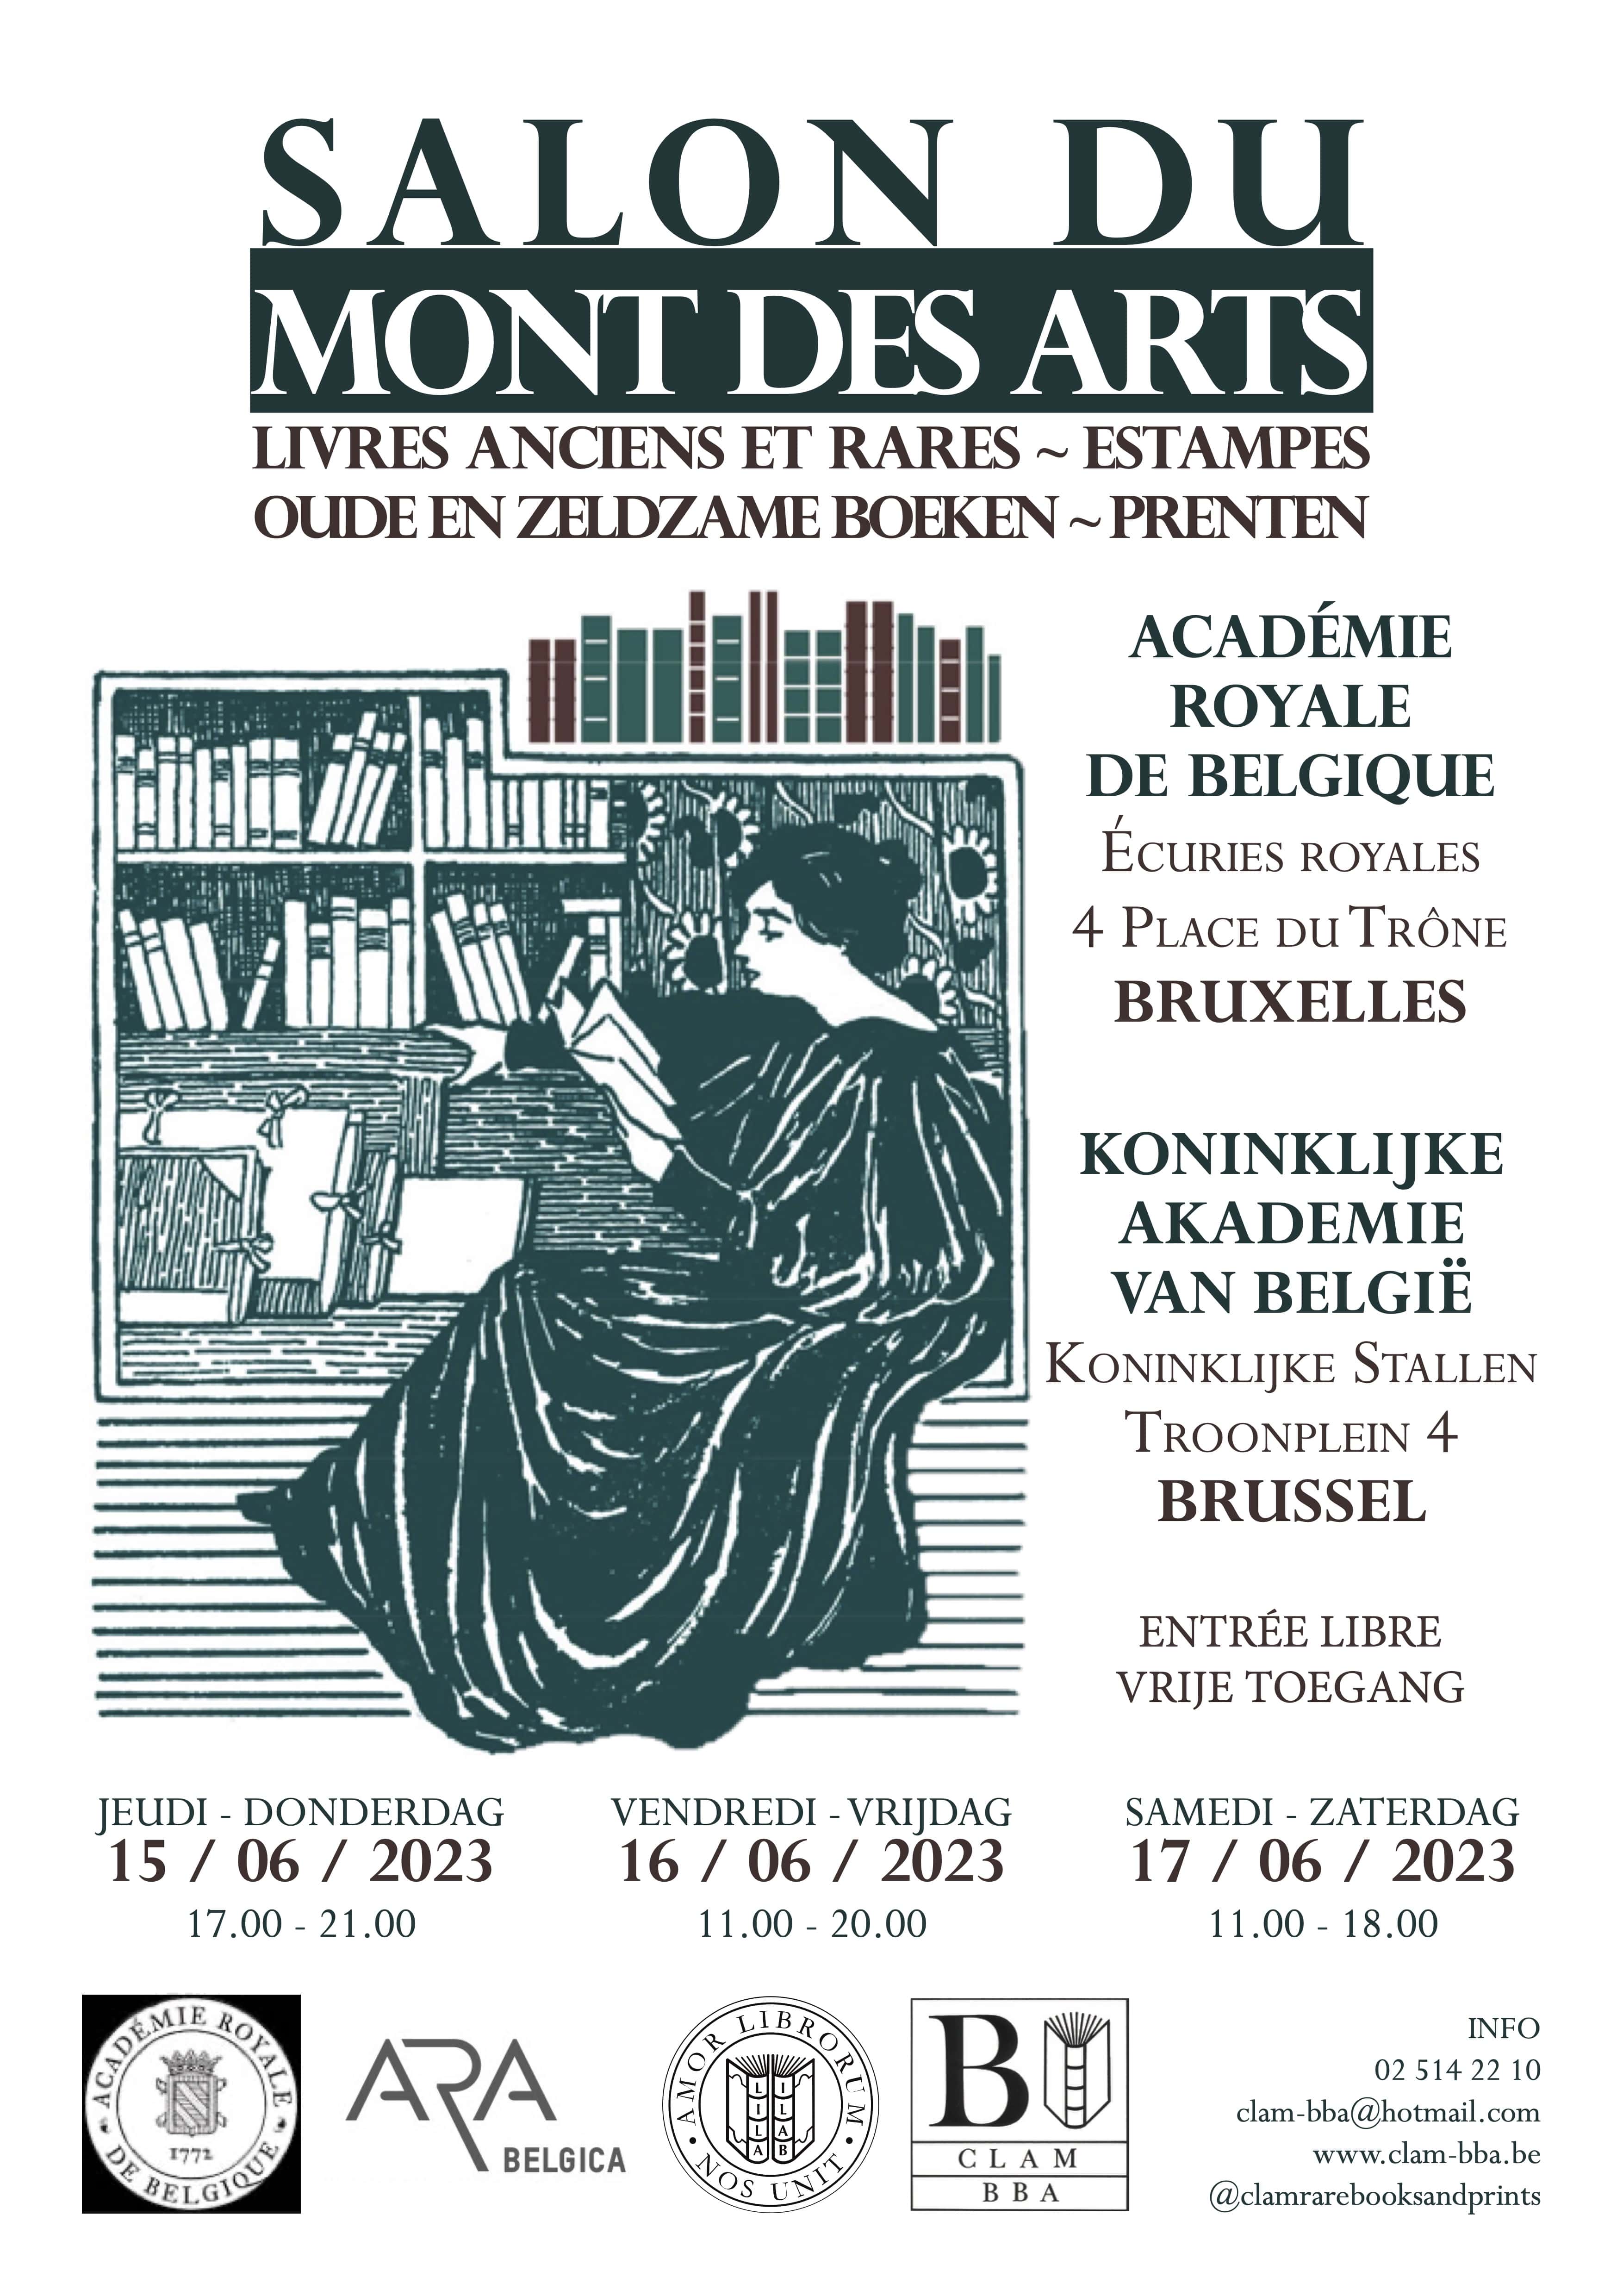 SALON DU MONT DES ARTS | 15-17 / 06 / 2023 | Brussels